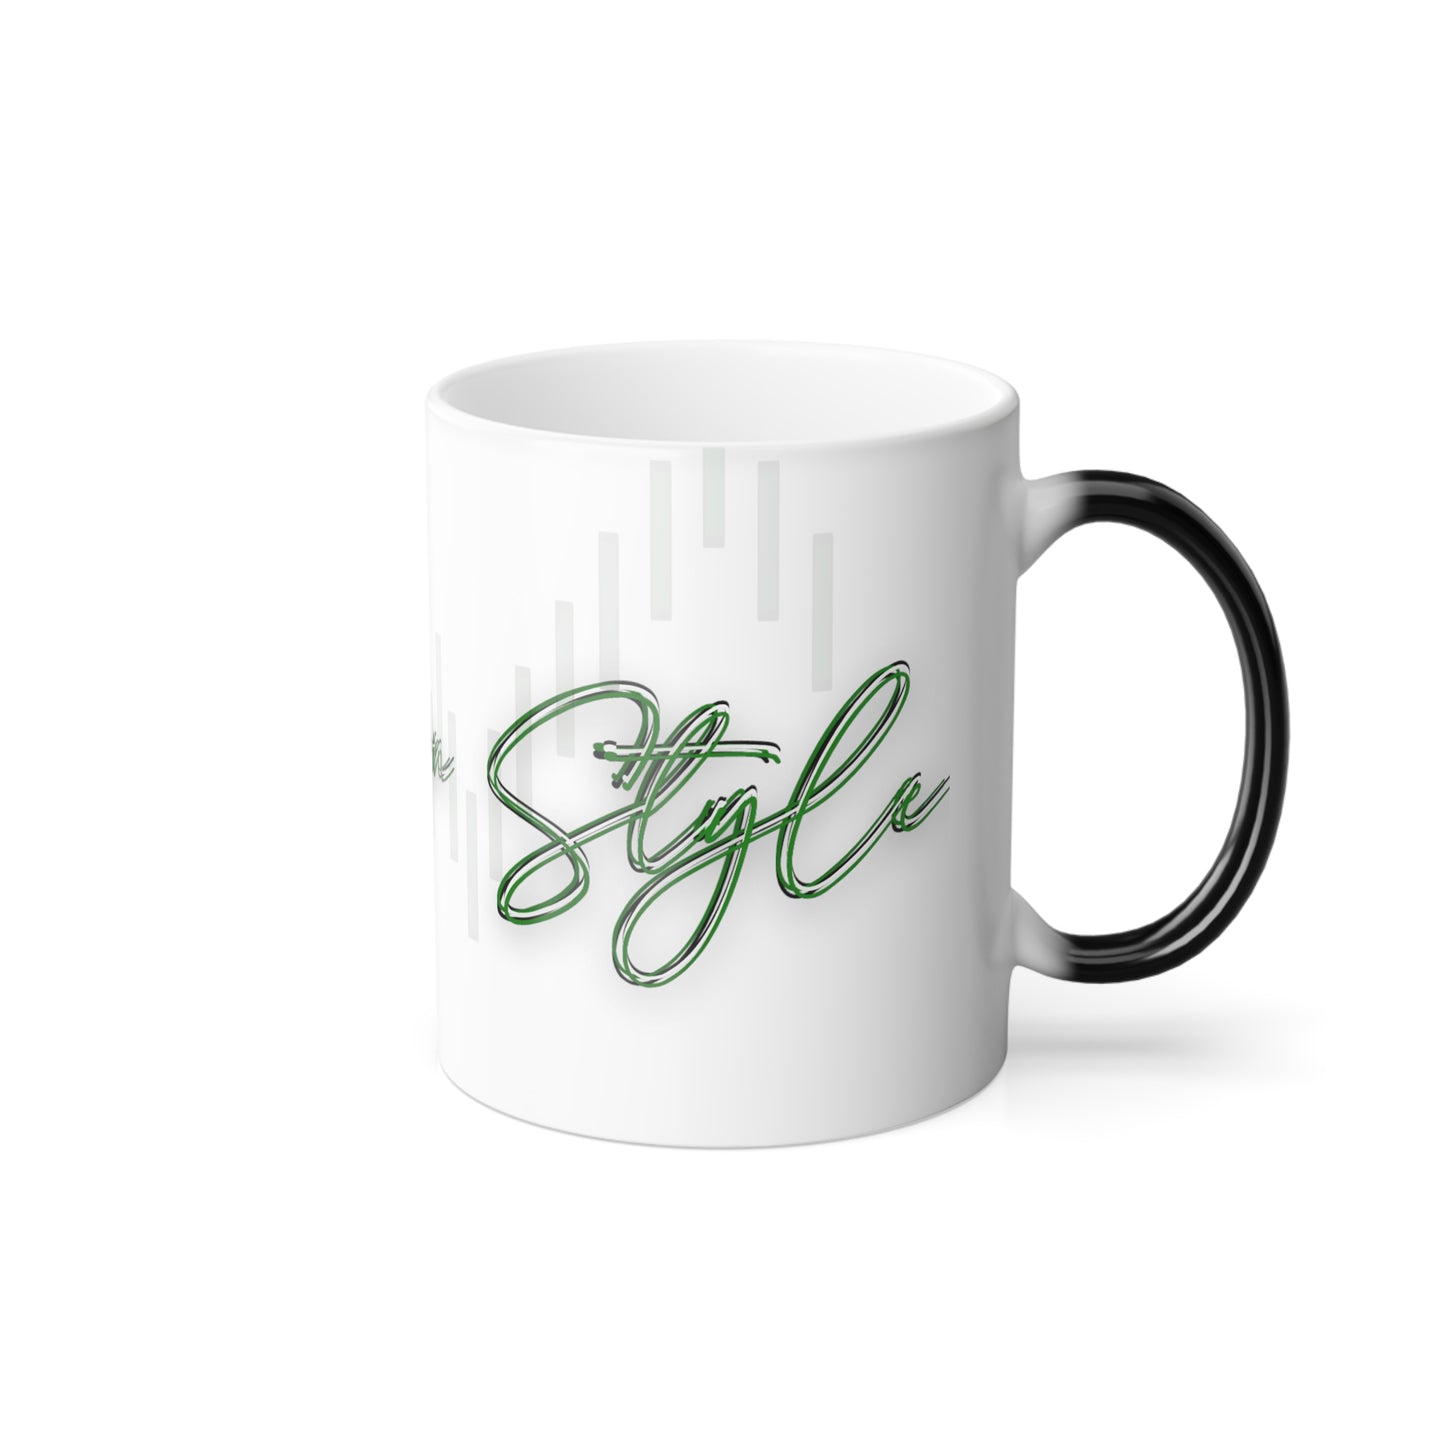 Fuel Your Style: Bullish on Style Coffee Mug Color Morphing Mug, 11oz